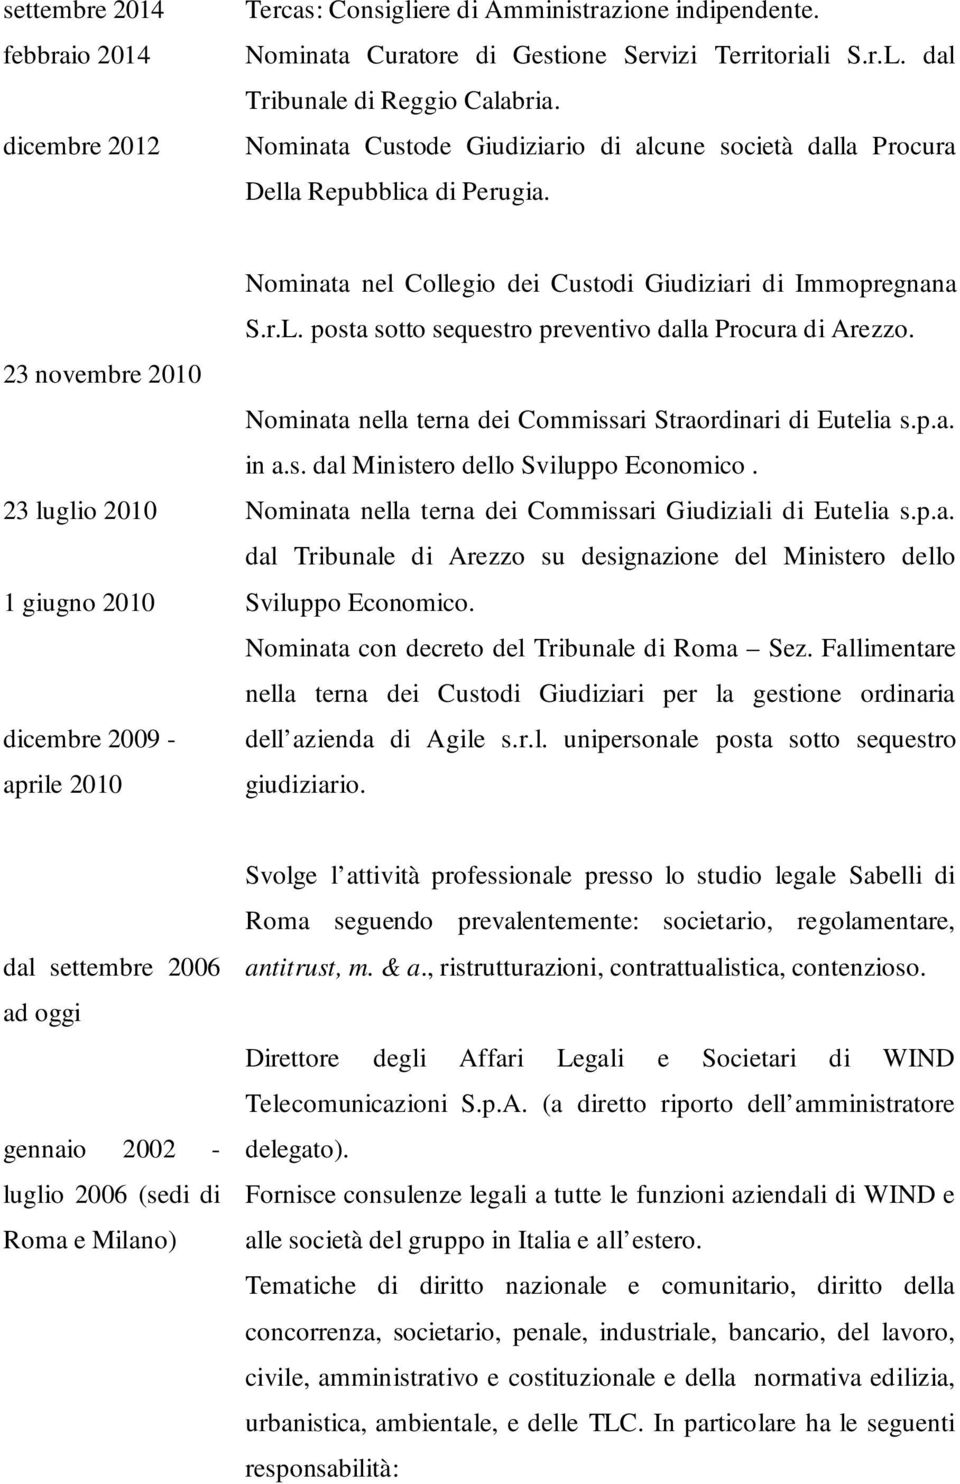 23 novembre 2010 23 luglio 2010 1 giugno 2010 dicembre 2009 - aprile 2010 Nominata nel Collegio dei Custodi Giudiziari di Immopregnana S.r.L. posta sotto sequestro preventivo dalla Procura di Arezzo.